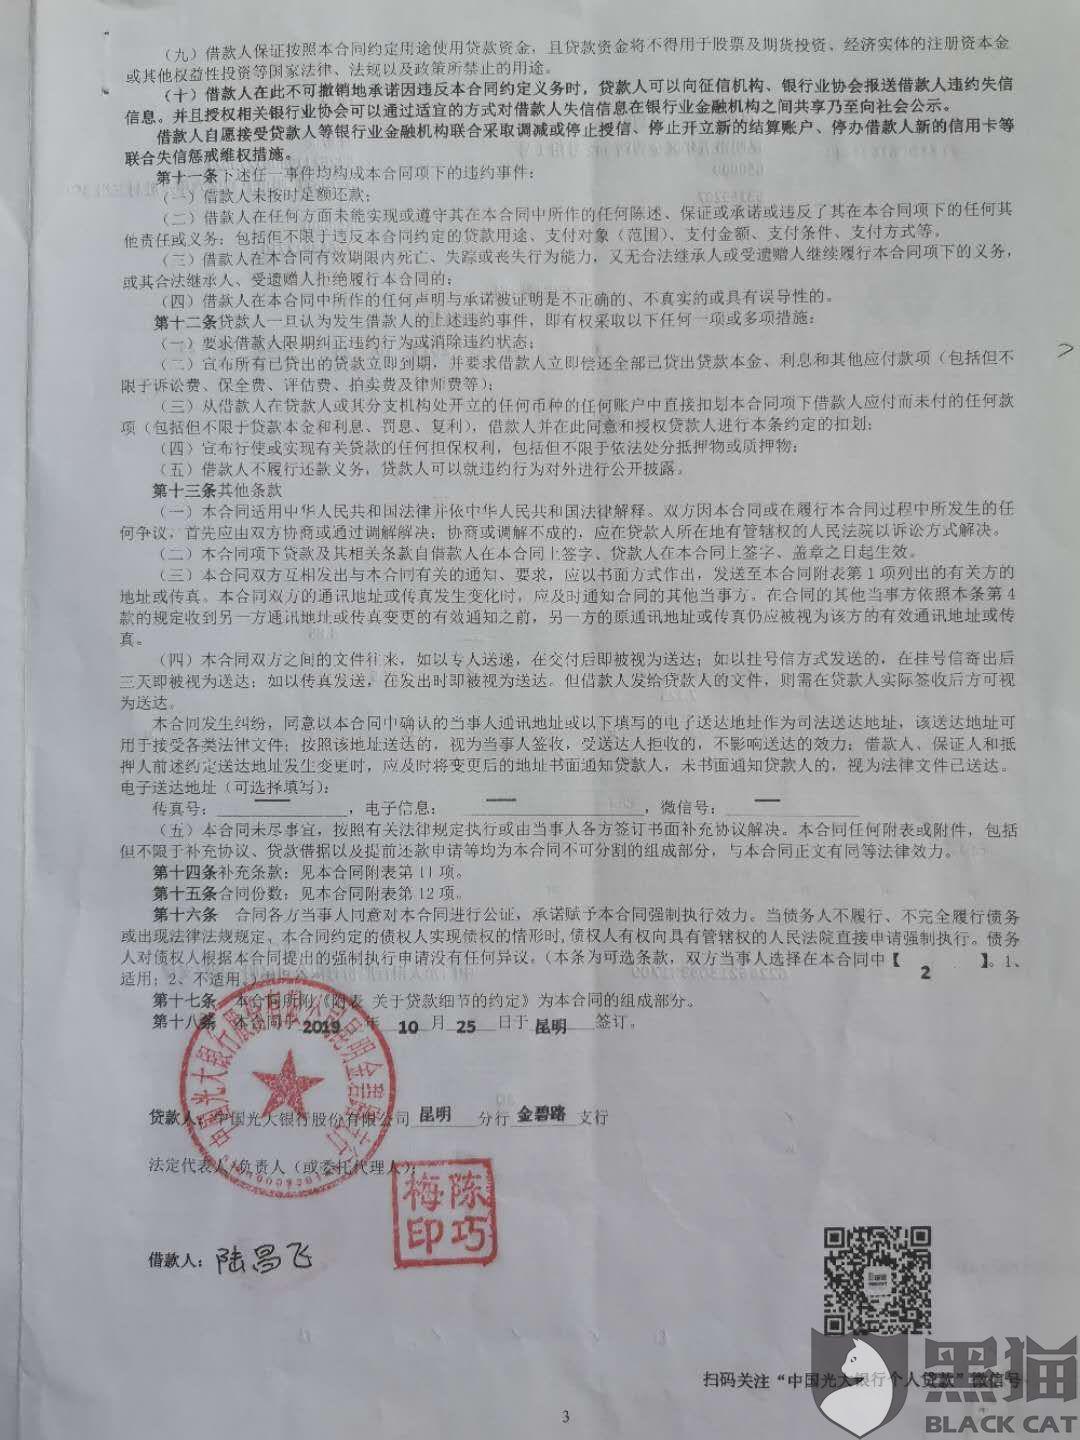 黑猫投诉:投诉中国人民财产保险股份有限公司昆明市分